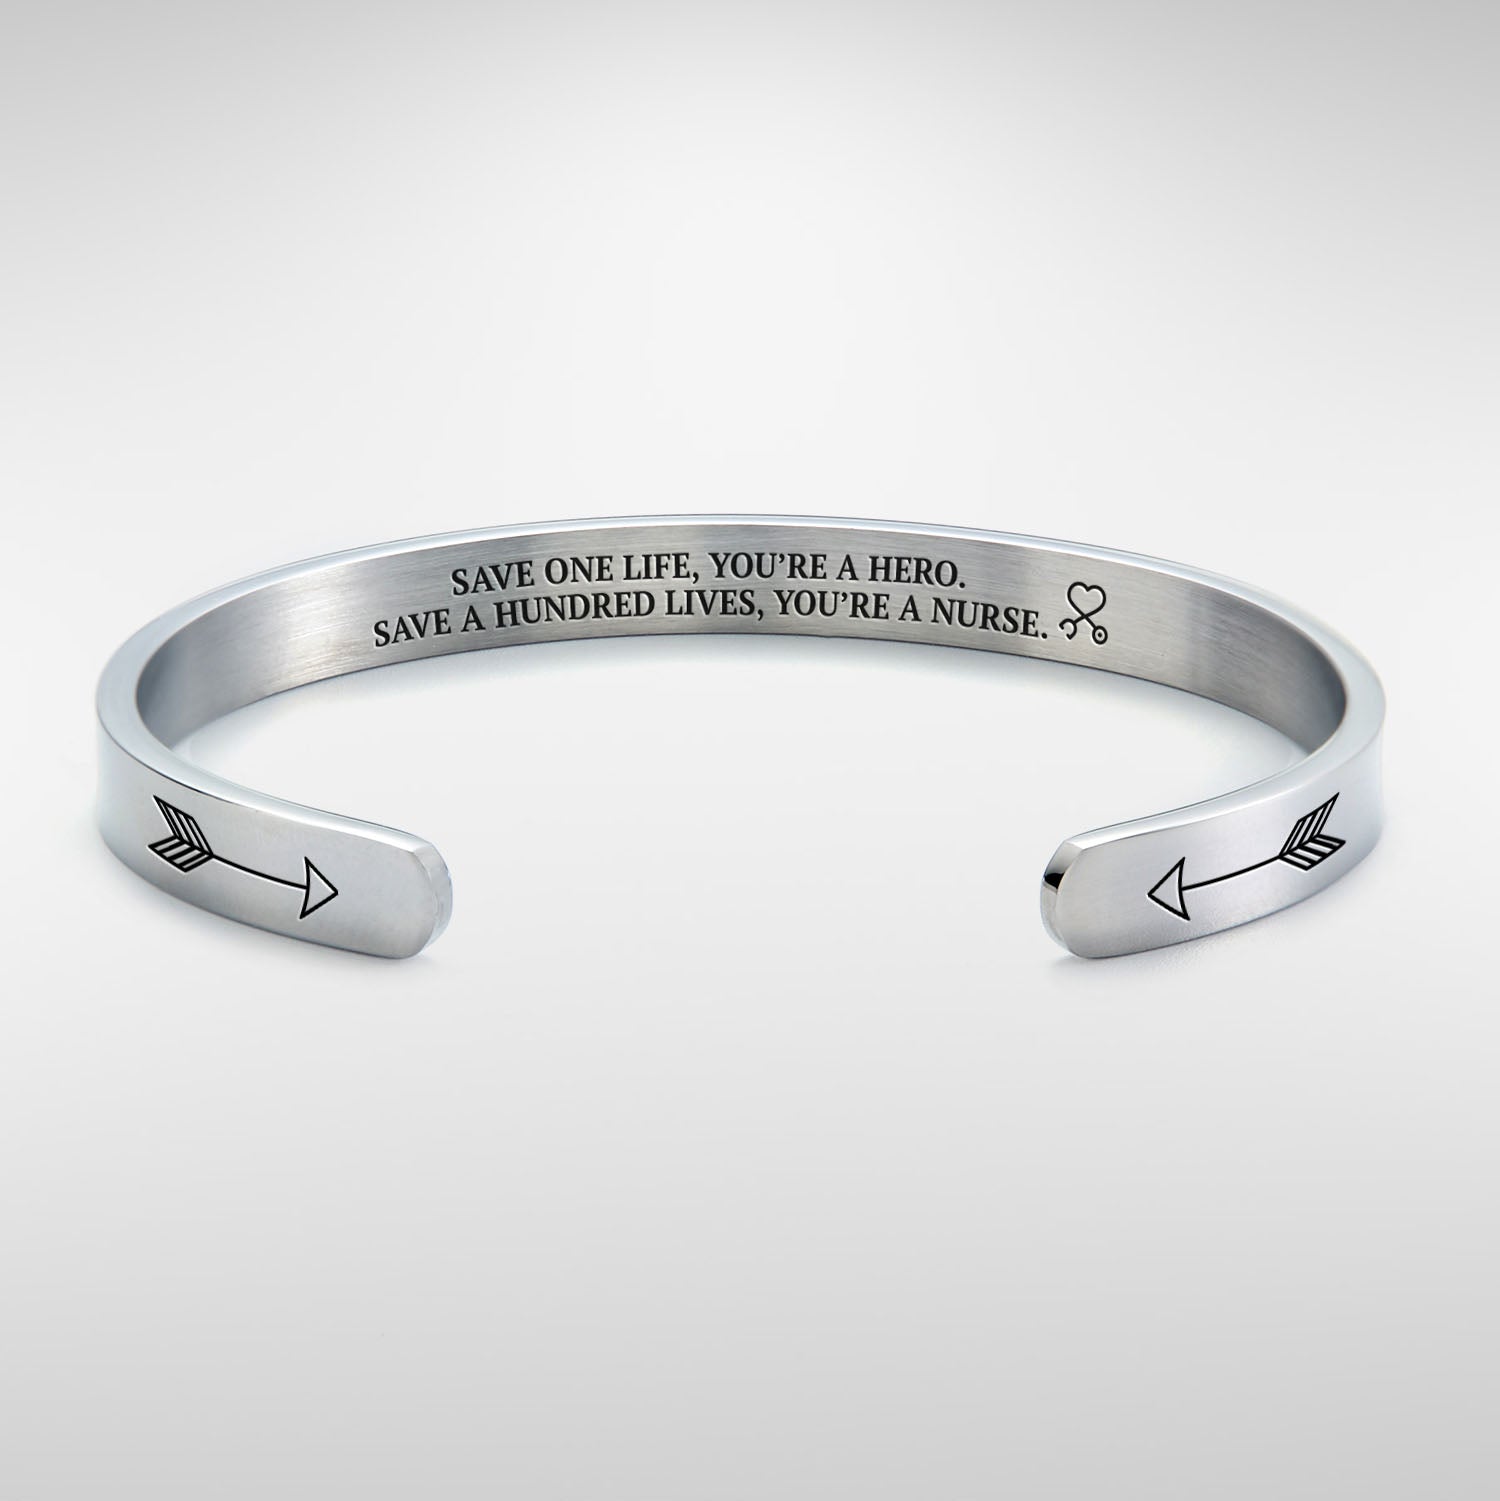 Save a hundred lives, You're a nurse Cuff Bracelet bracelet with silver plating